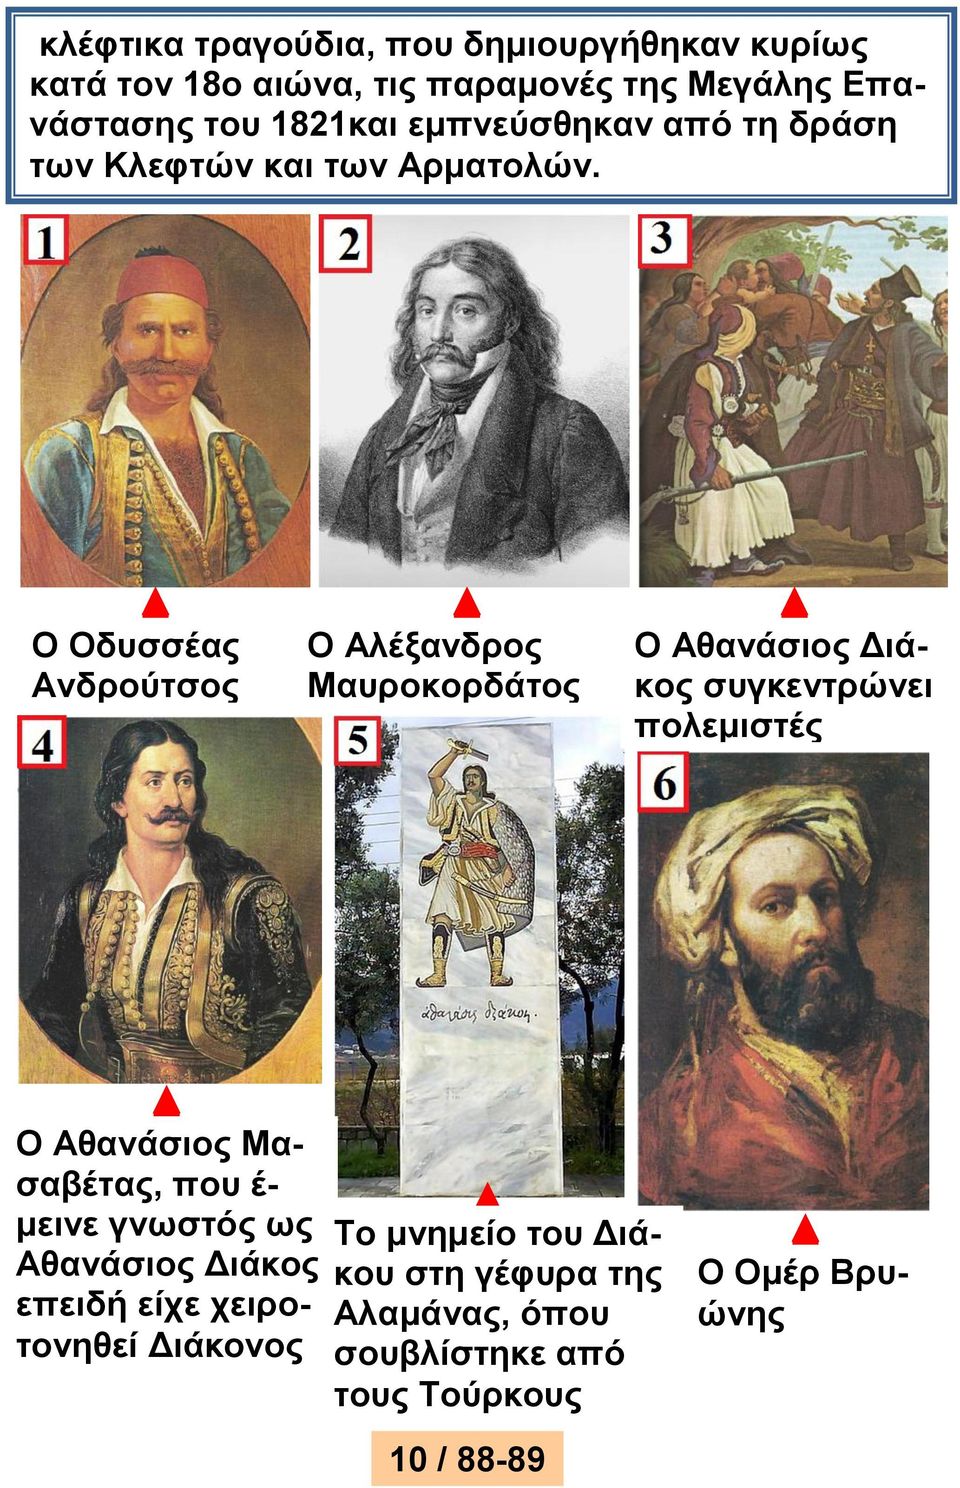 Ο Οδυσσέας Ανδρούτσος Ο Αλέξανδρος Μαυροκορδάτος Ο Αθανάσιος Διάκος συγκεντρώνει πολεμιστές Ο Αθανάσιος Μασαβέτας,